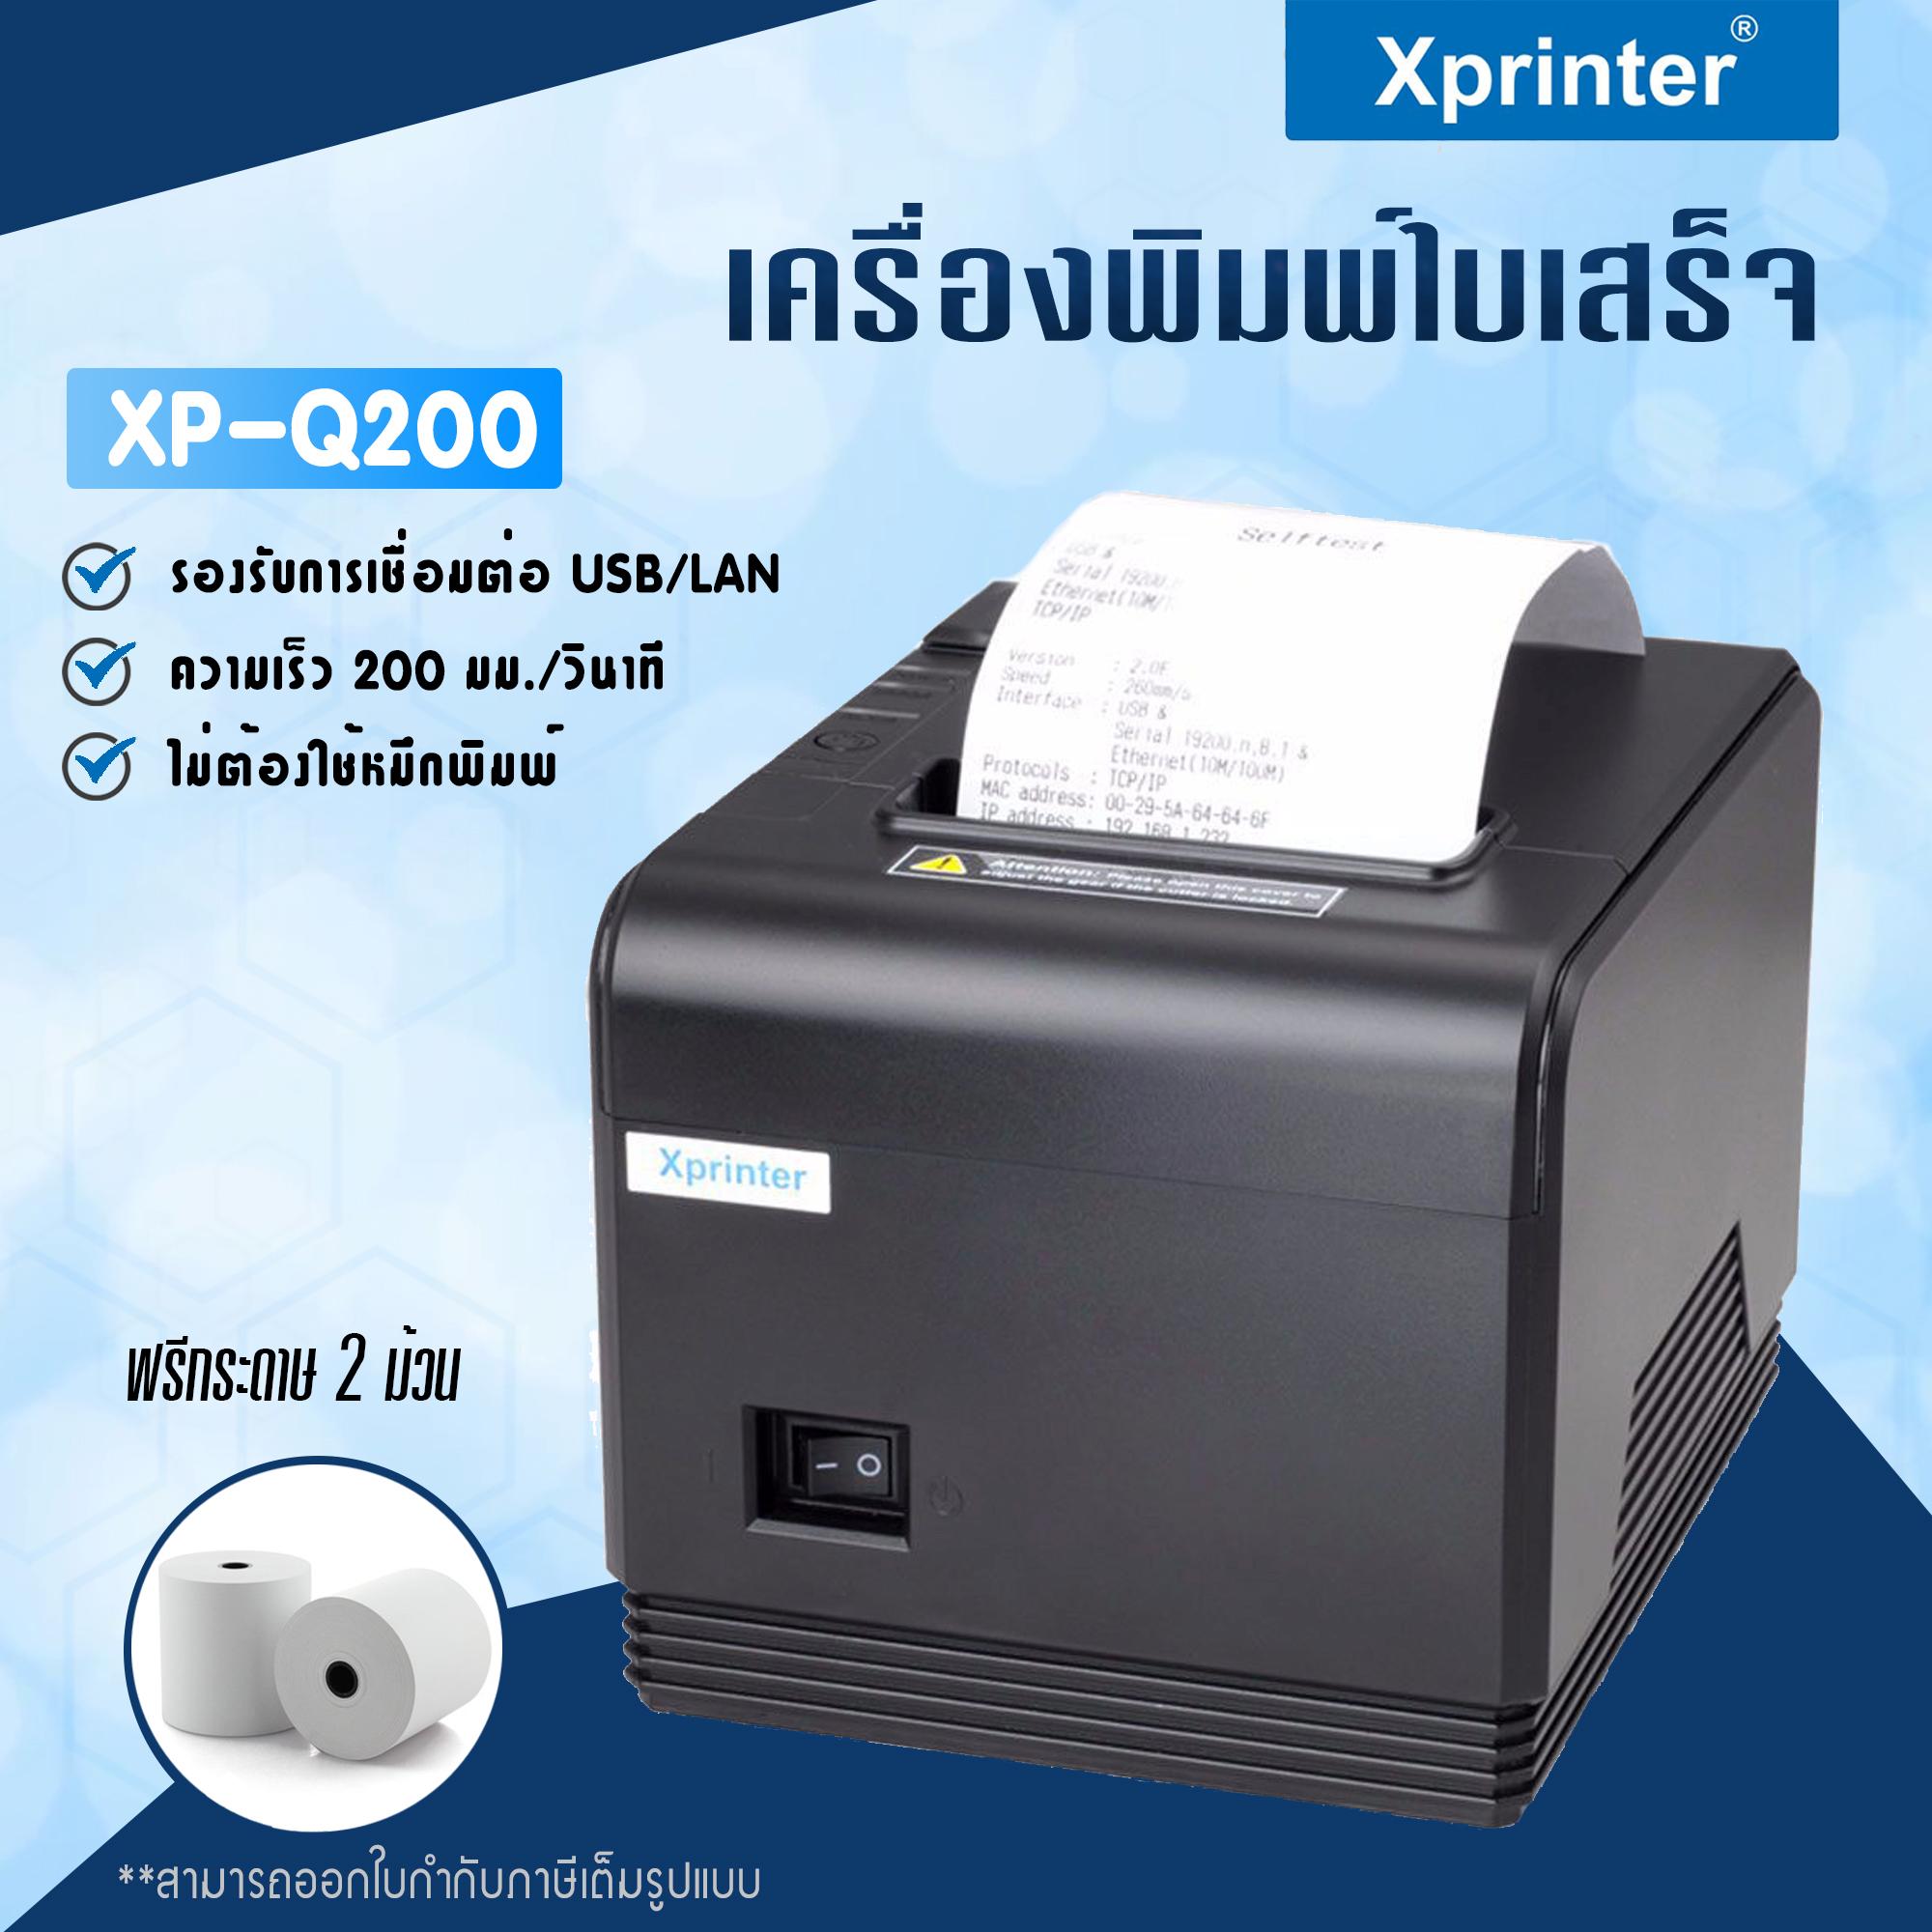 เครื่องพิมพ์ใบเสร็จ Xprinter รุ่น XP-Q200 รองรับขนาด 80 มม. (Receipt Printer Thermal 80 mm.)